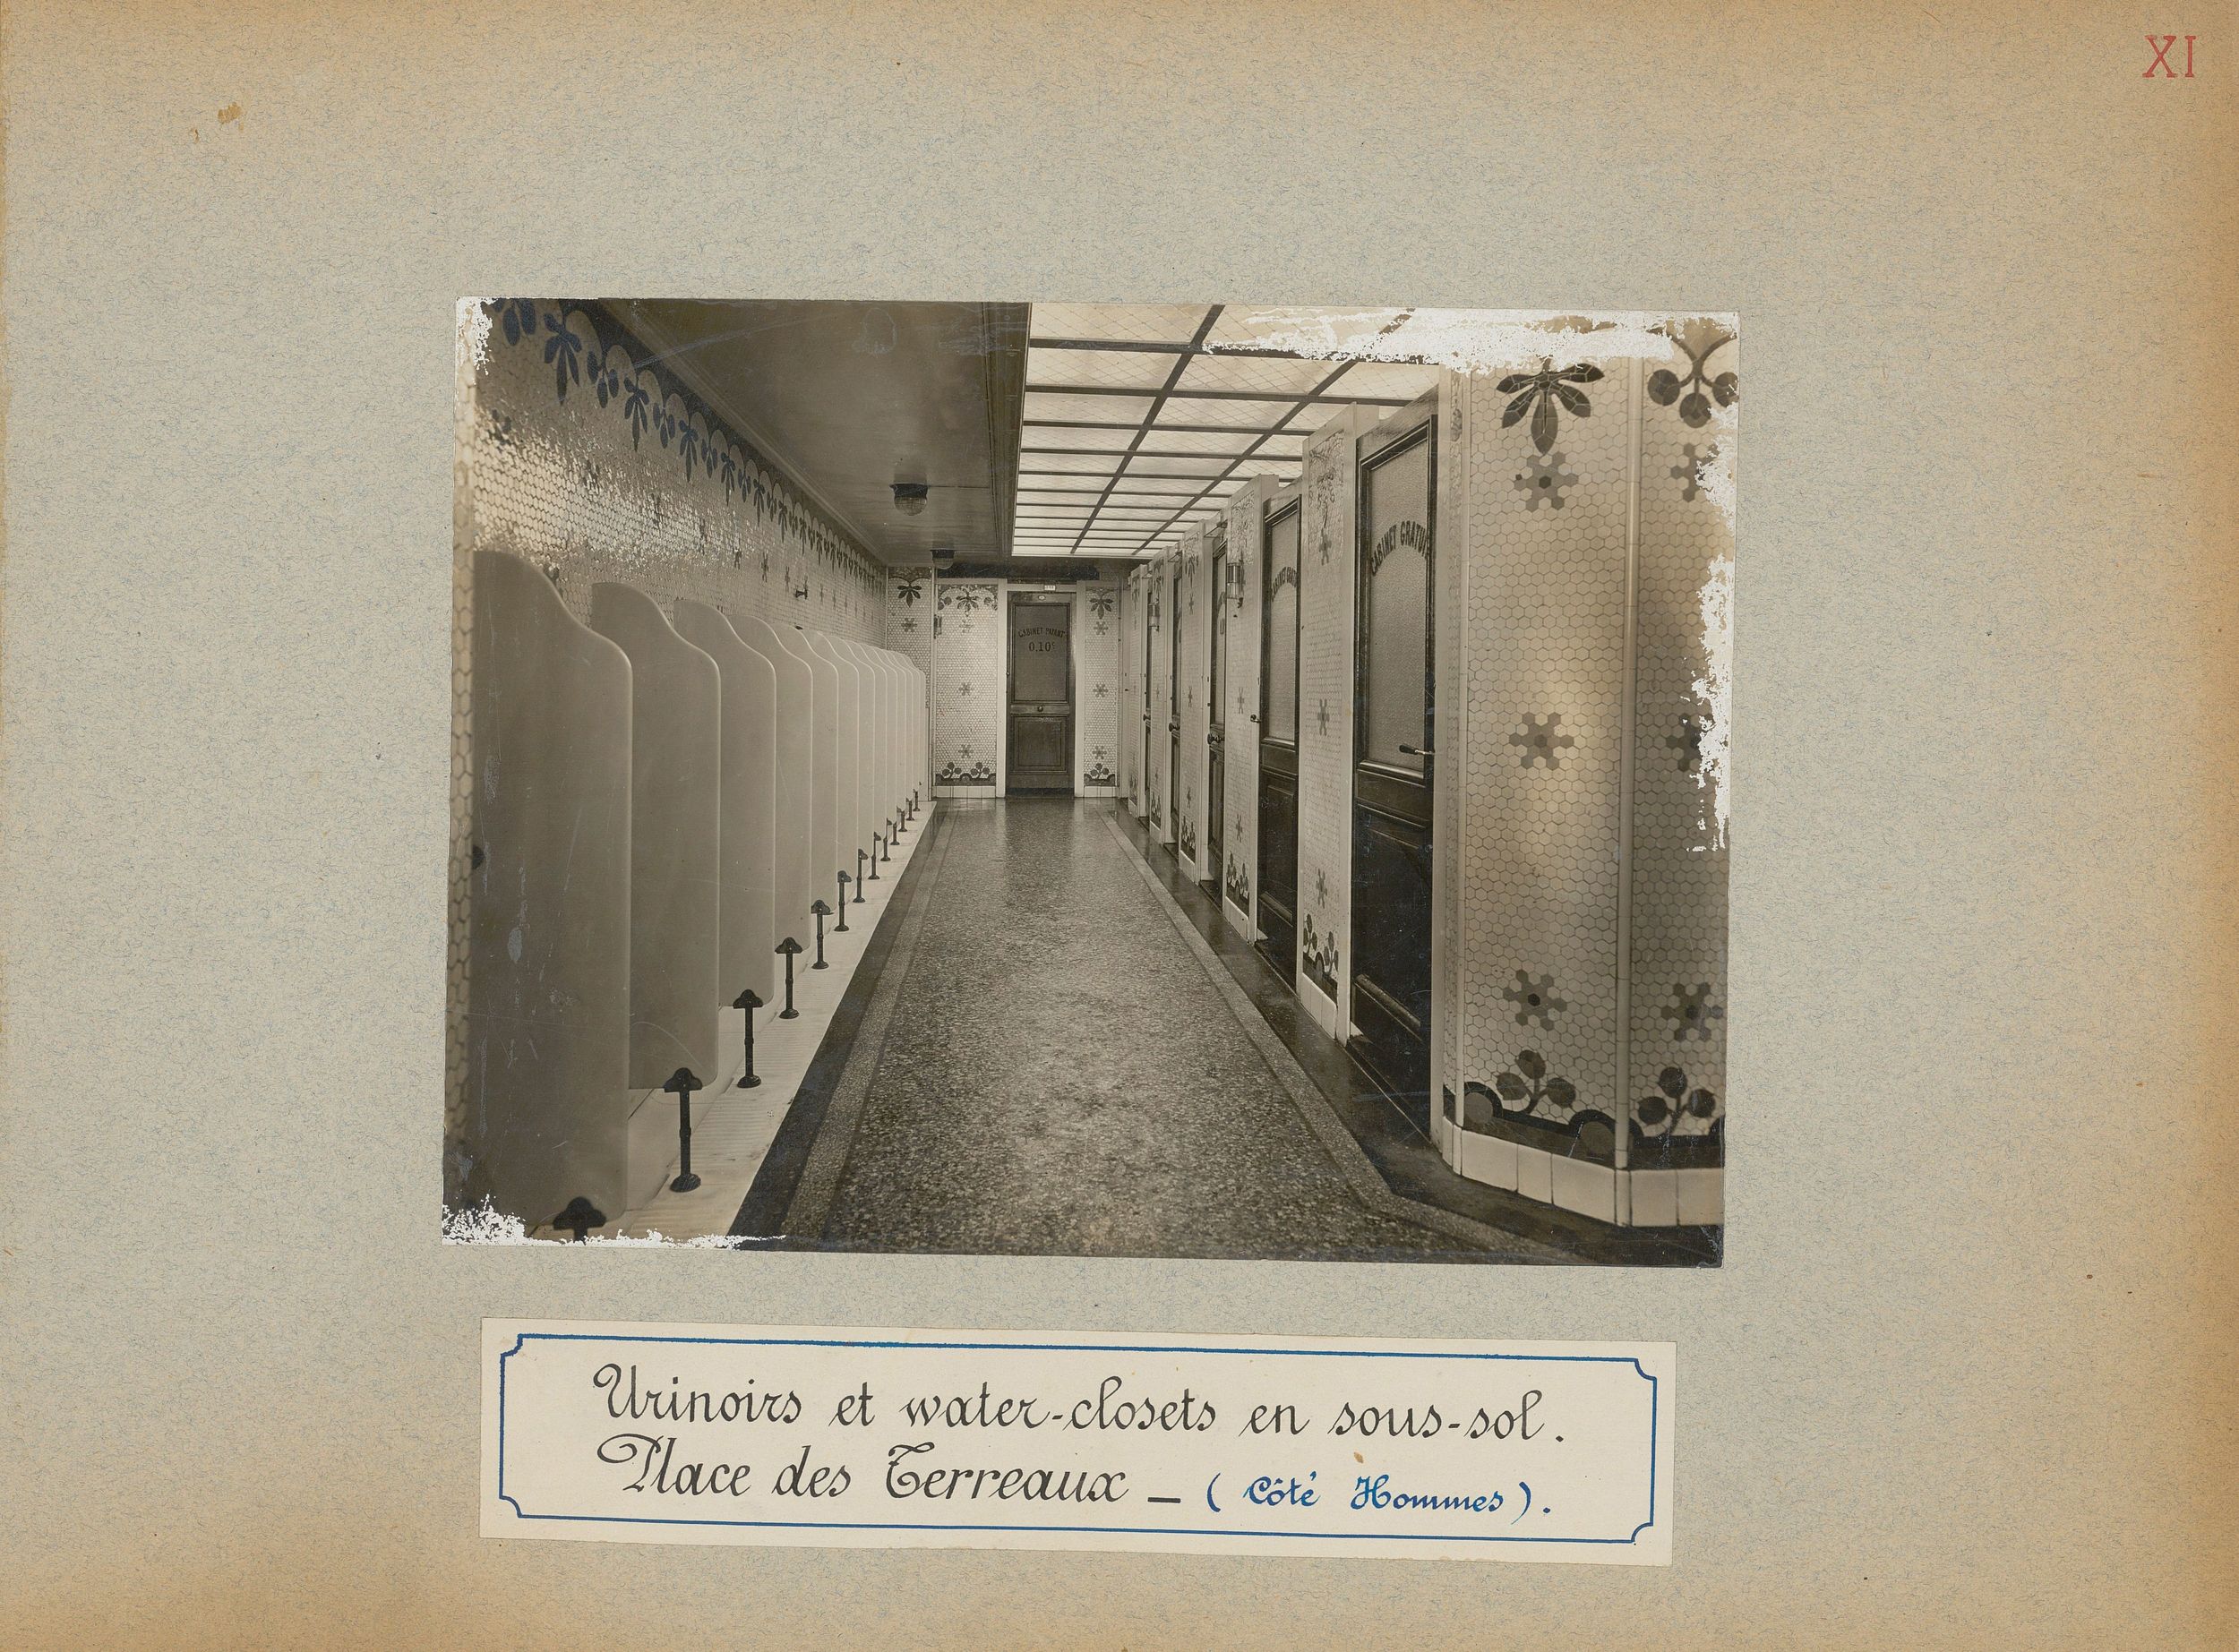 Urinoirs et water-closets en sous-sol place des Terreaux côté hommes : tirage photo par le Service municipal de la voirie (1914-1915, 3SAT/24/14)